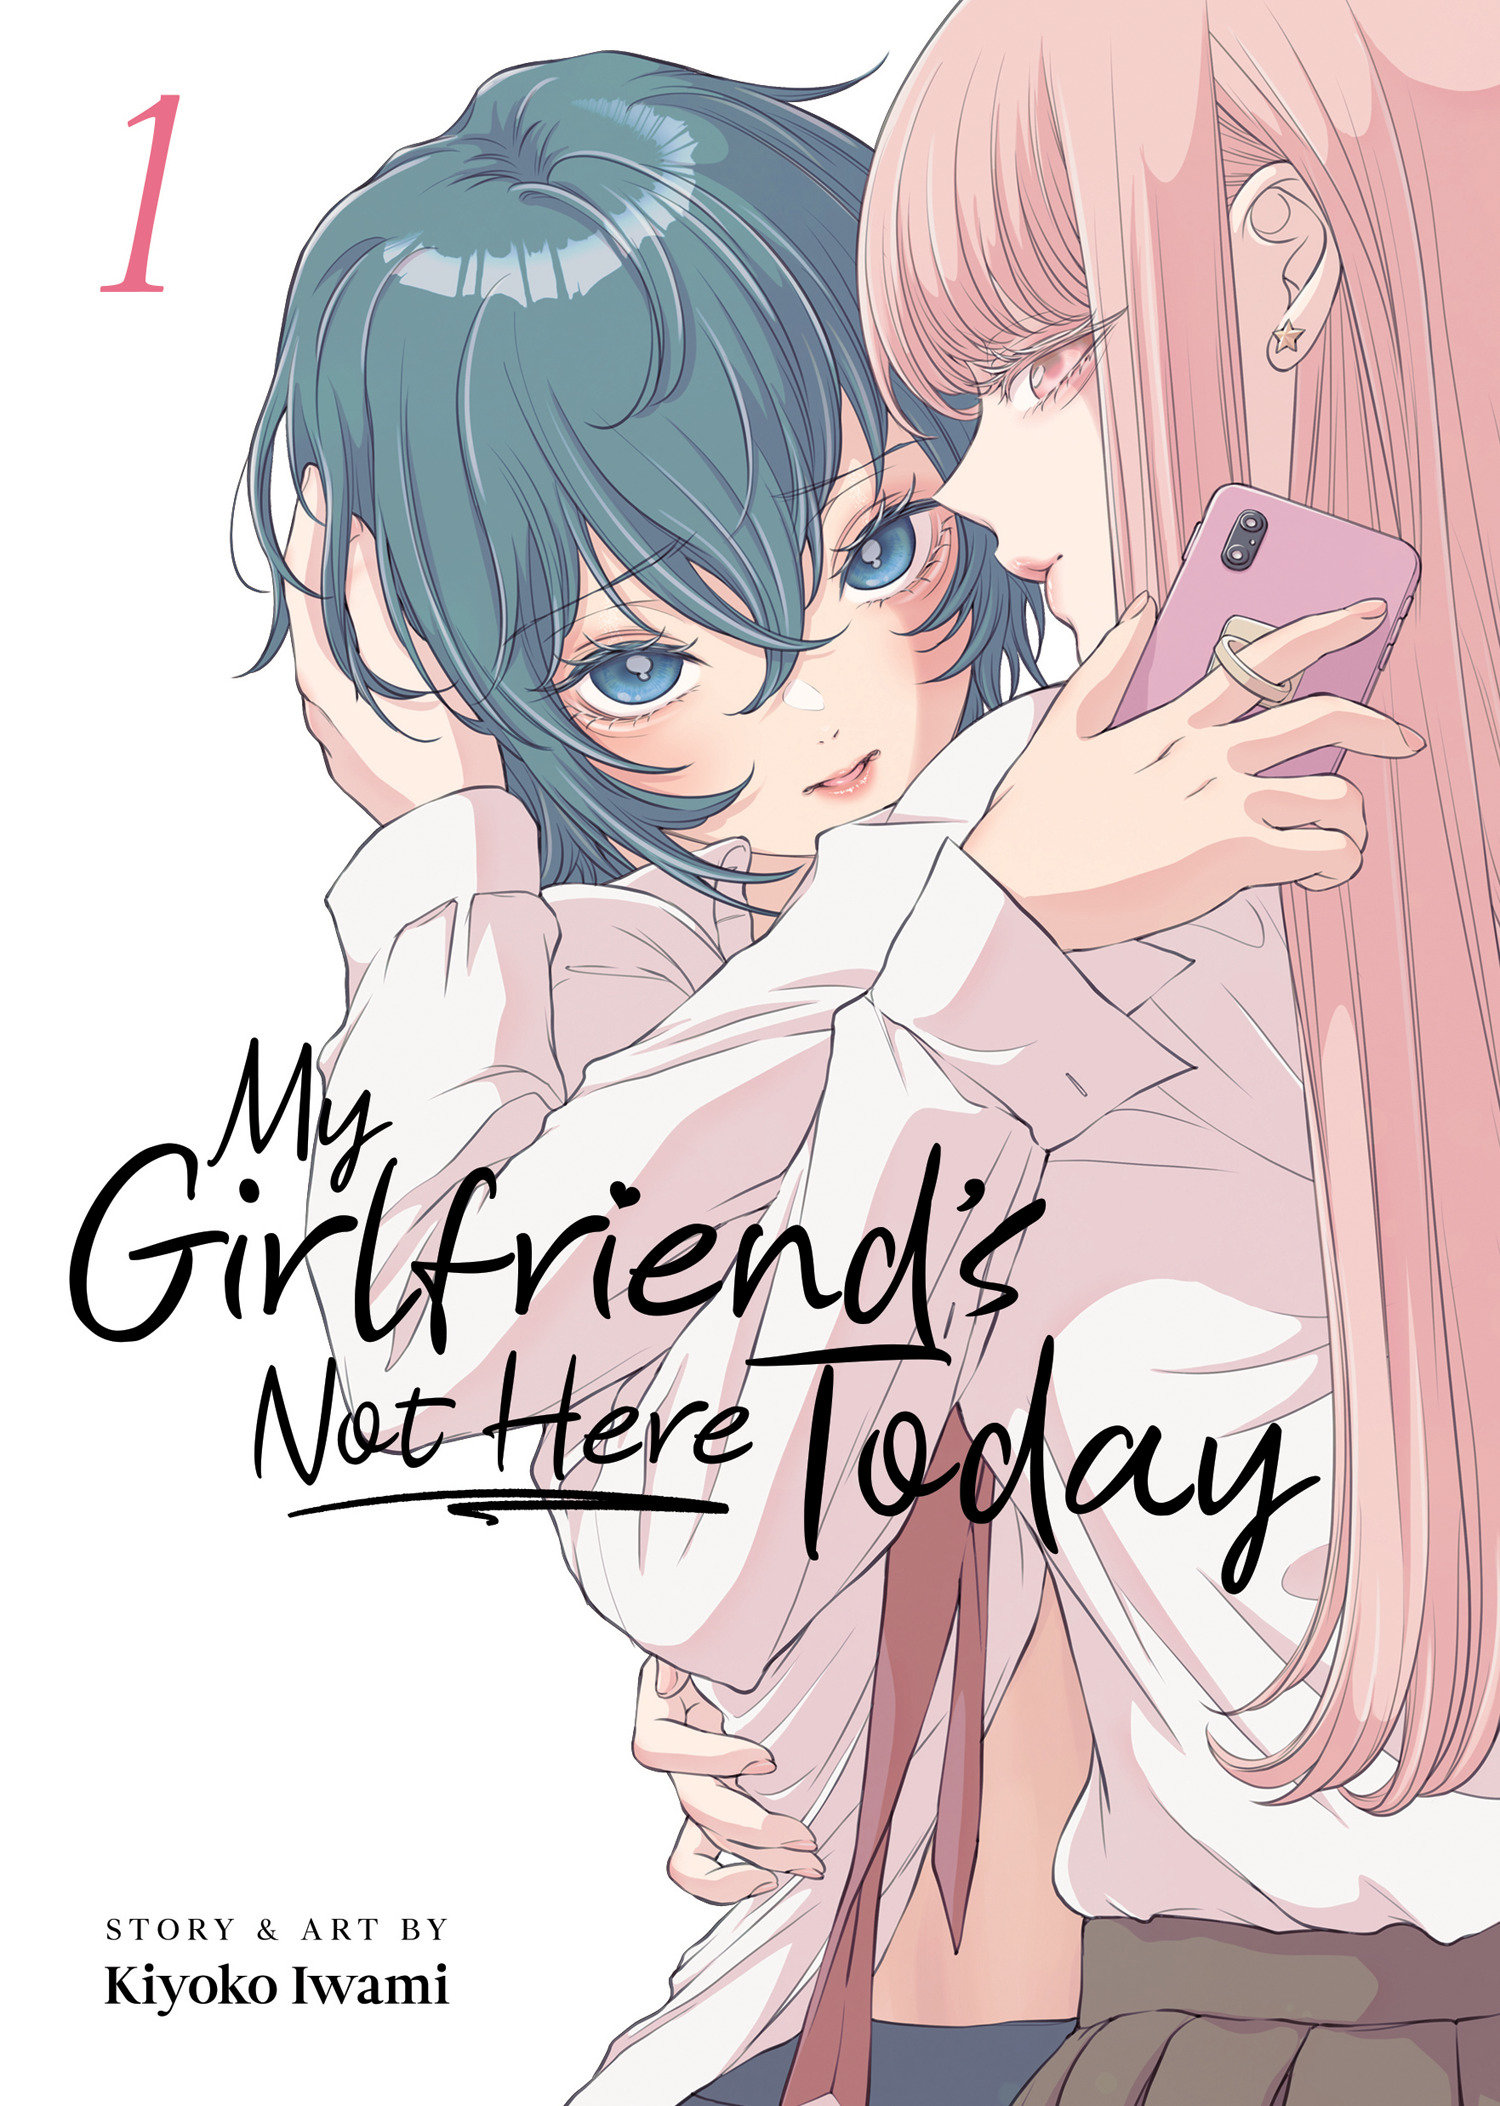 My Girlfriend's Not Here Today Manga Volume 1